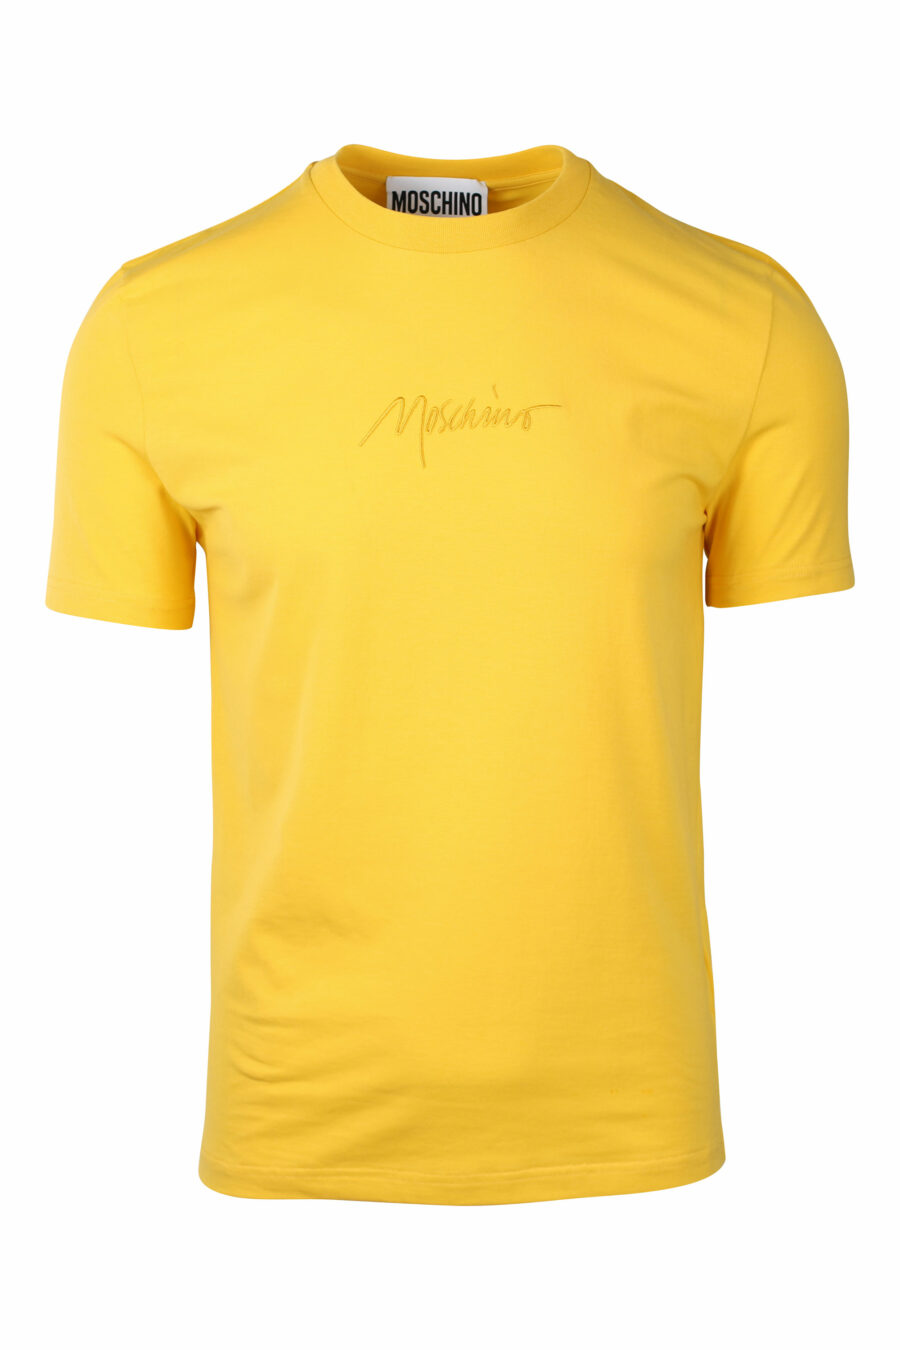 T-shirt amarela com o logótipo "signature" - IMG 1425